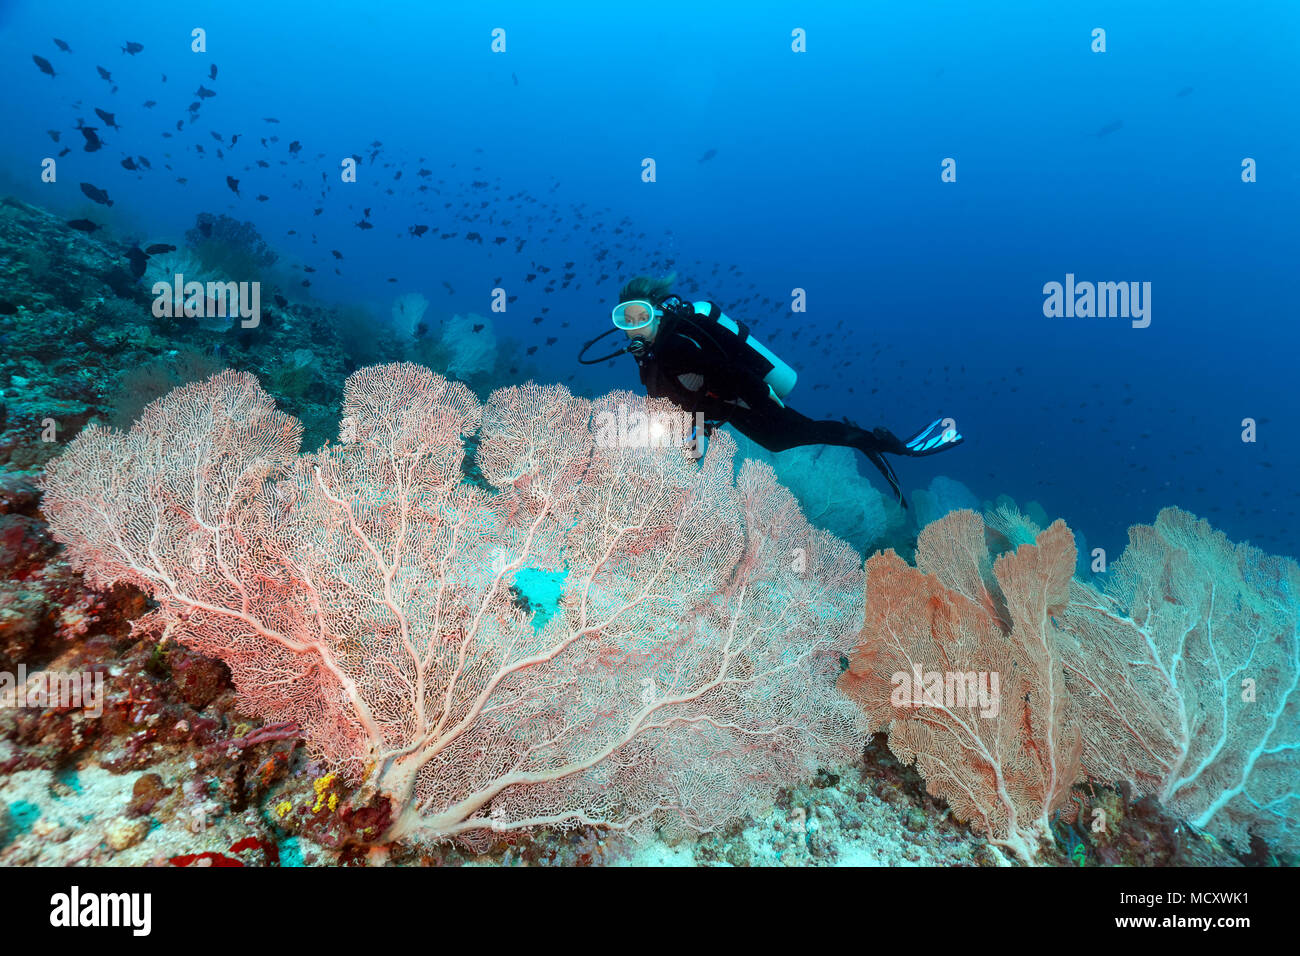 Taucher sieht große Gorgonien (anella Mollis) in Coral Reef, Indischer Ozean, Malediven Stockfoto